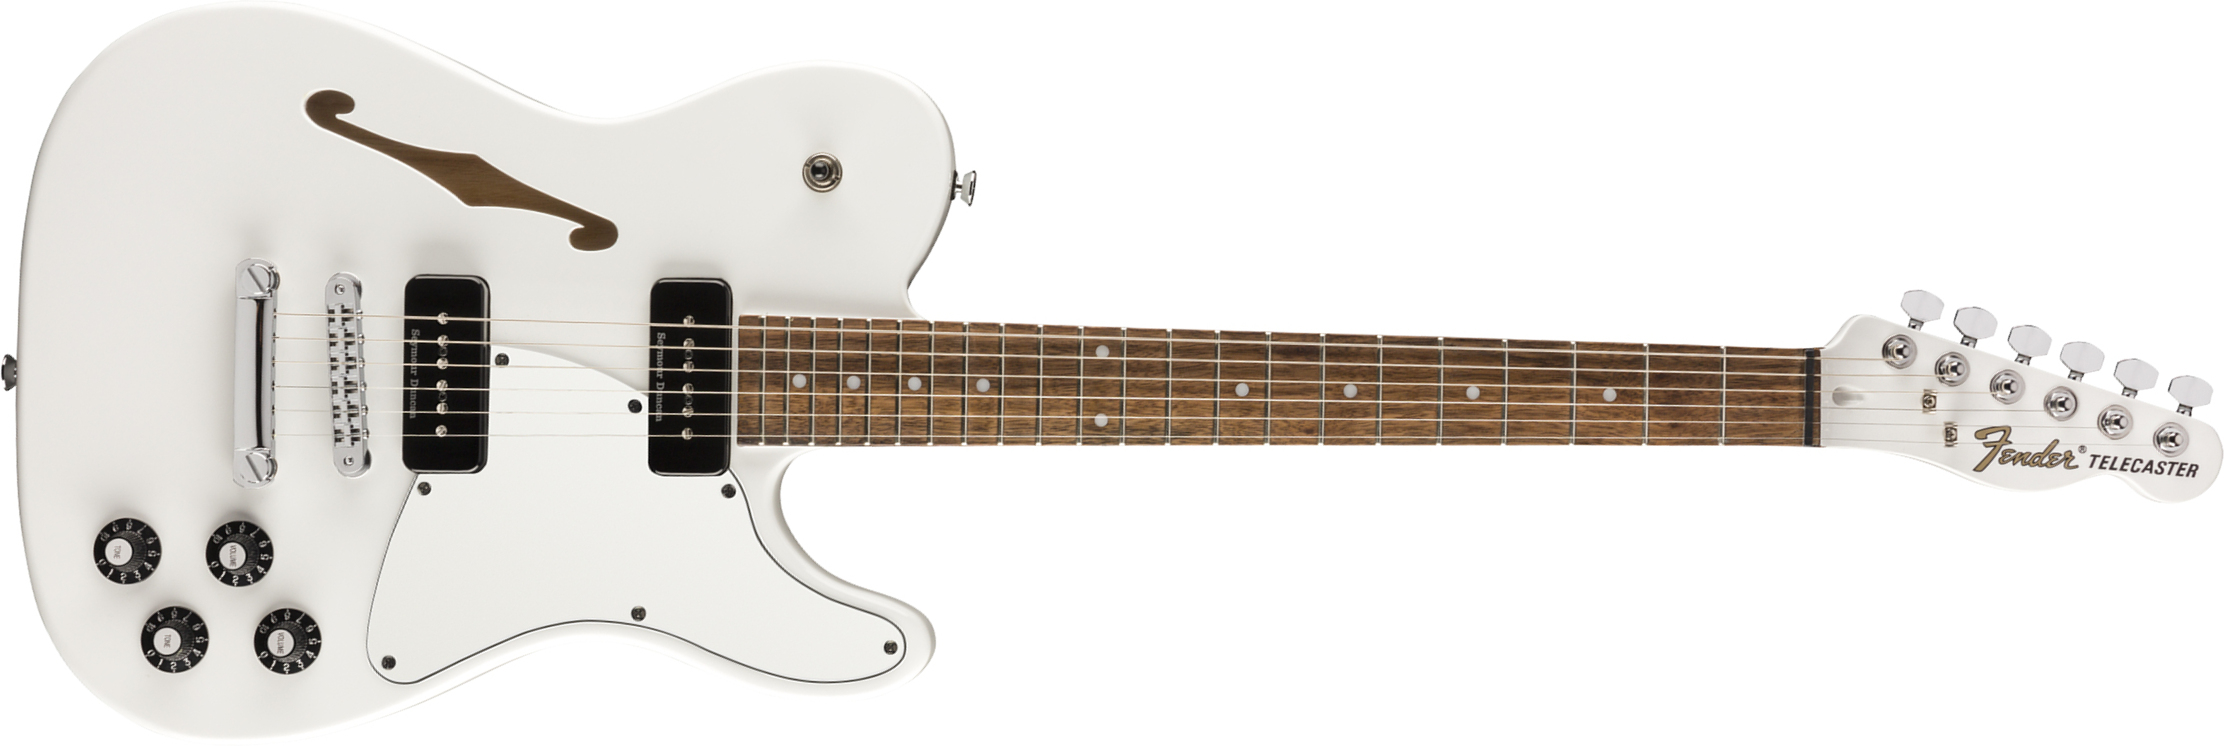 Fender Jim Adkins Tele Ja-90 Mex Signature 2p90 Lau - White - Guitare Électrique Forme Tel - Main picture